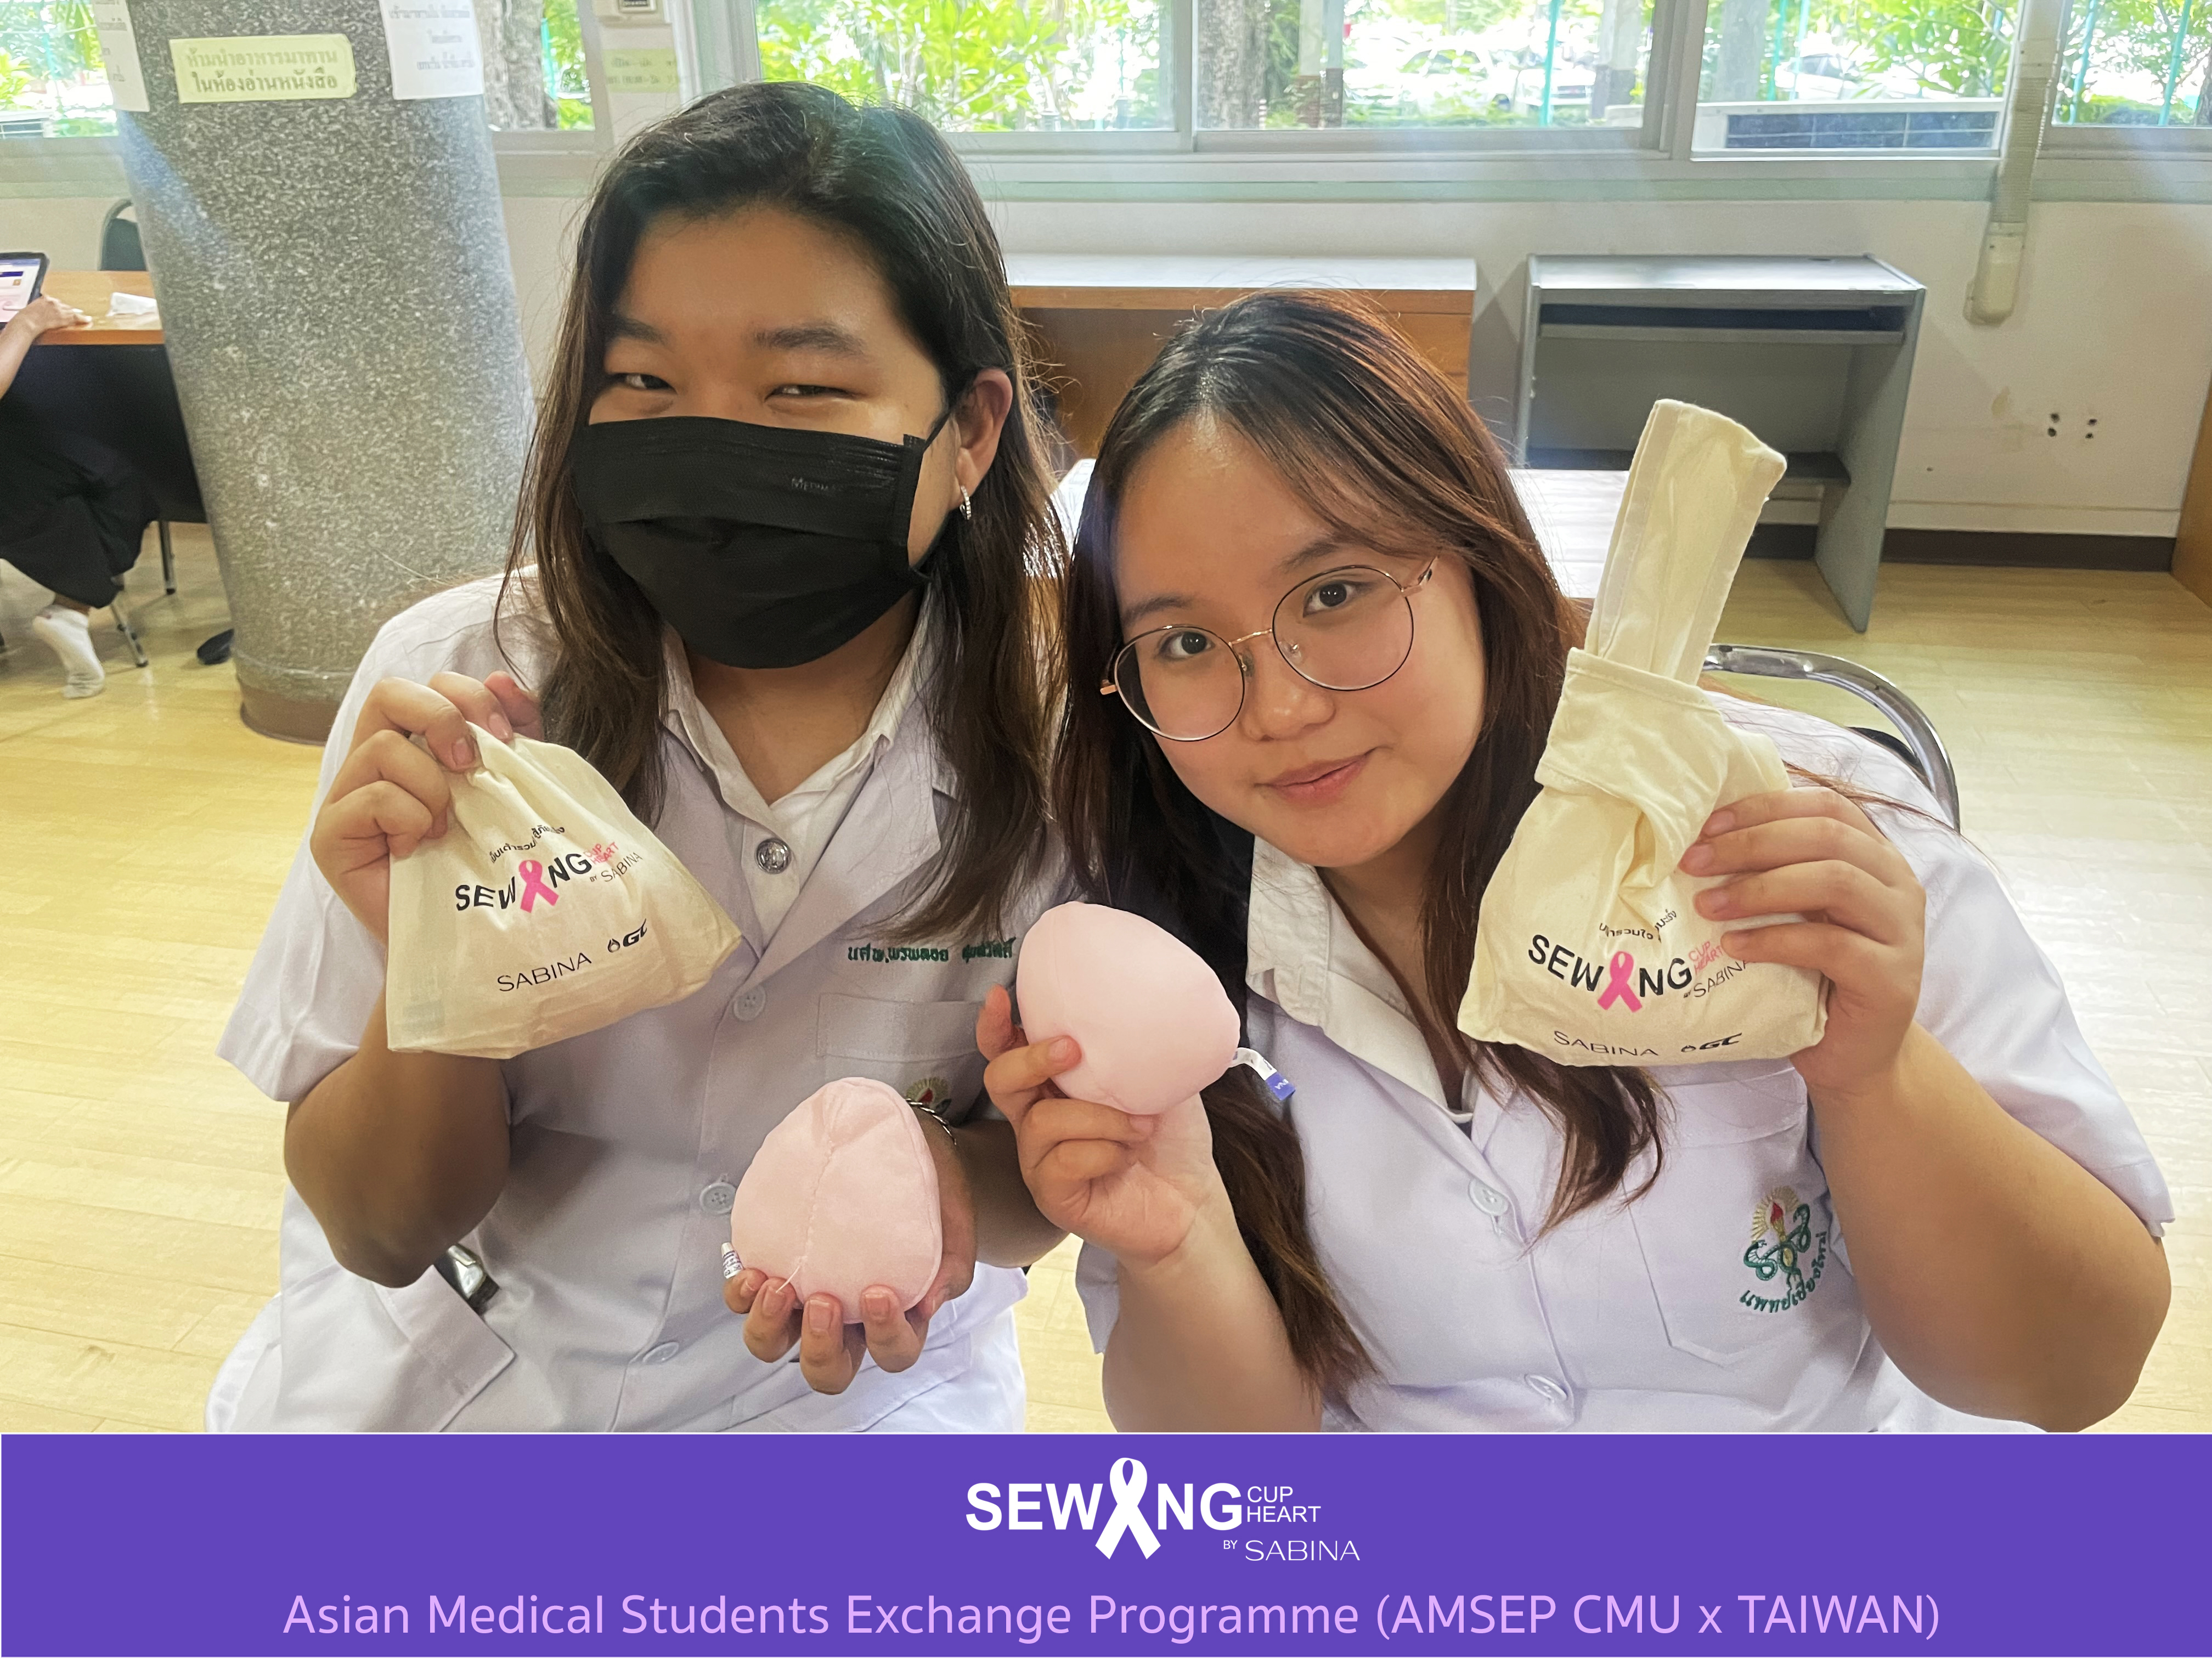 โครงการ Asian Medical Students Exchange Programme (AMSEP CMU x TAIWAN) ร่วมกิจกรรมเย็บเต้านมเทียม